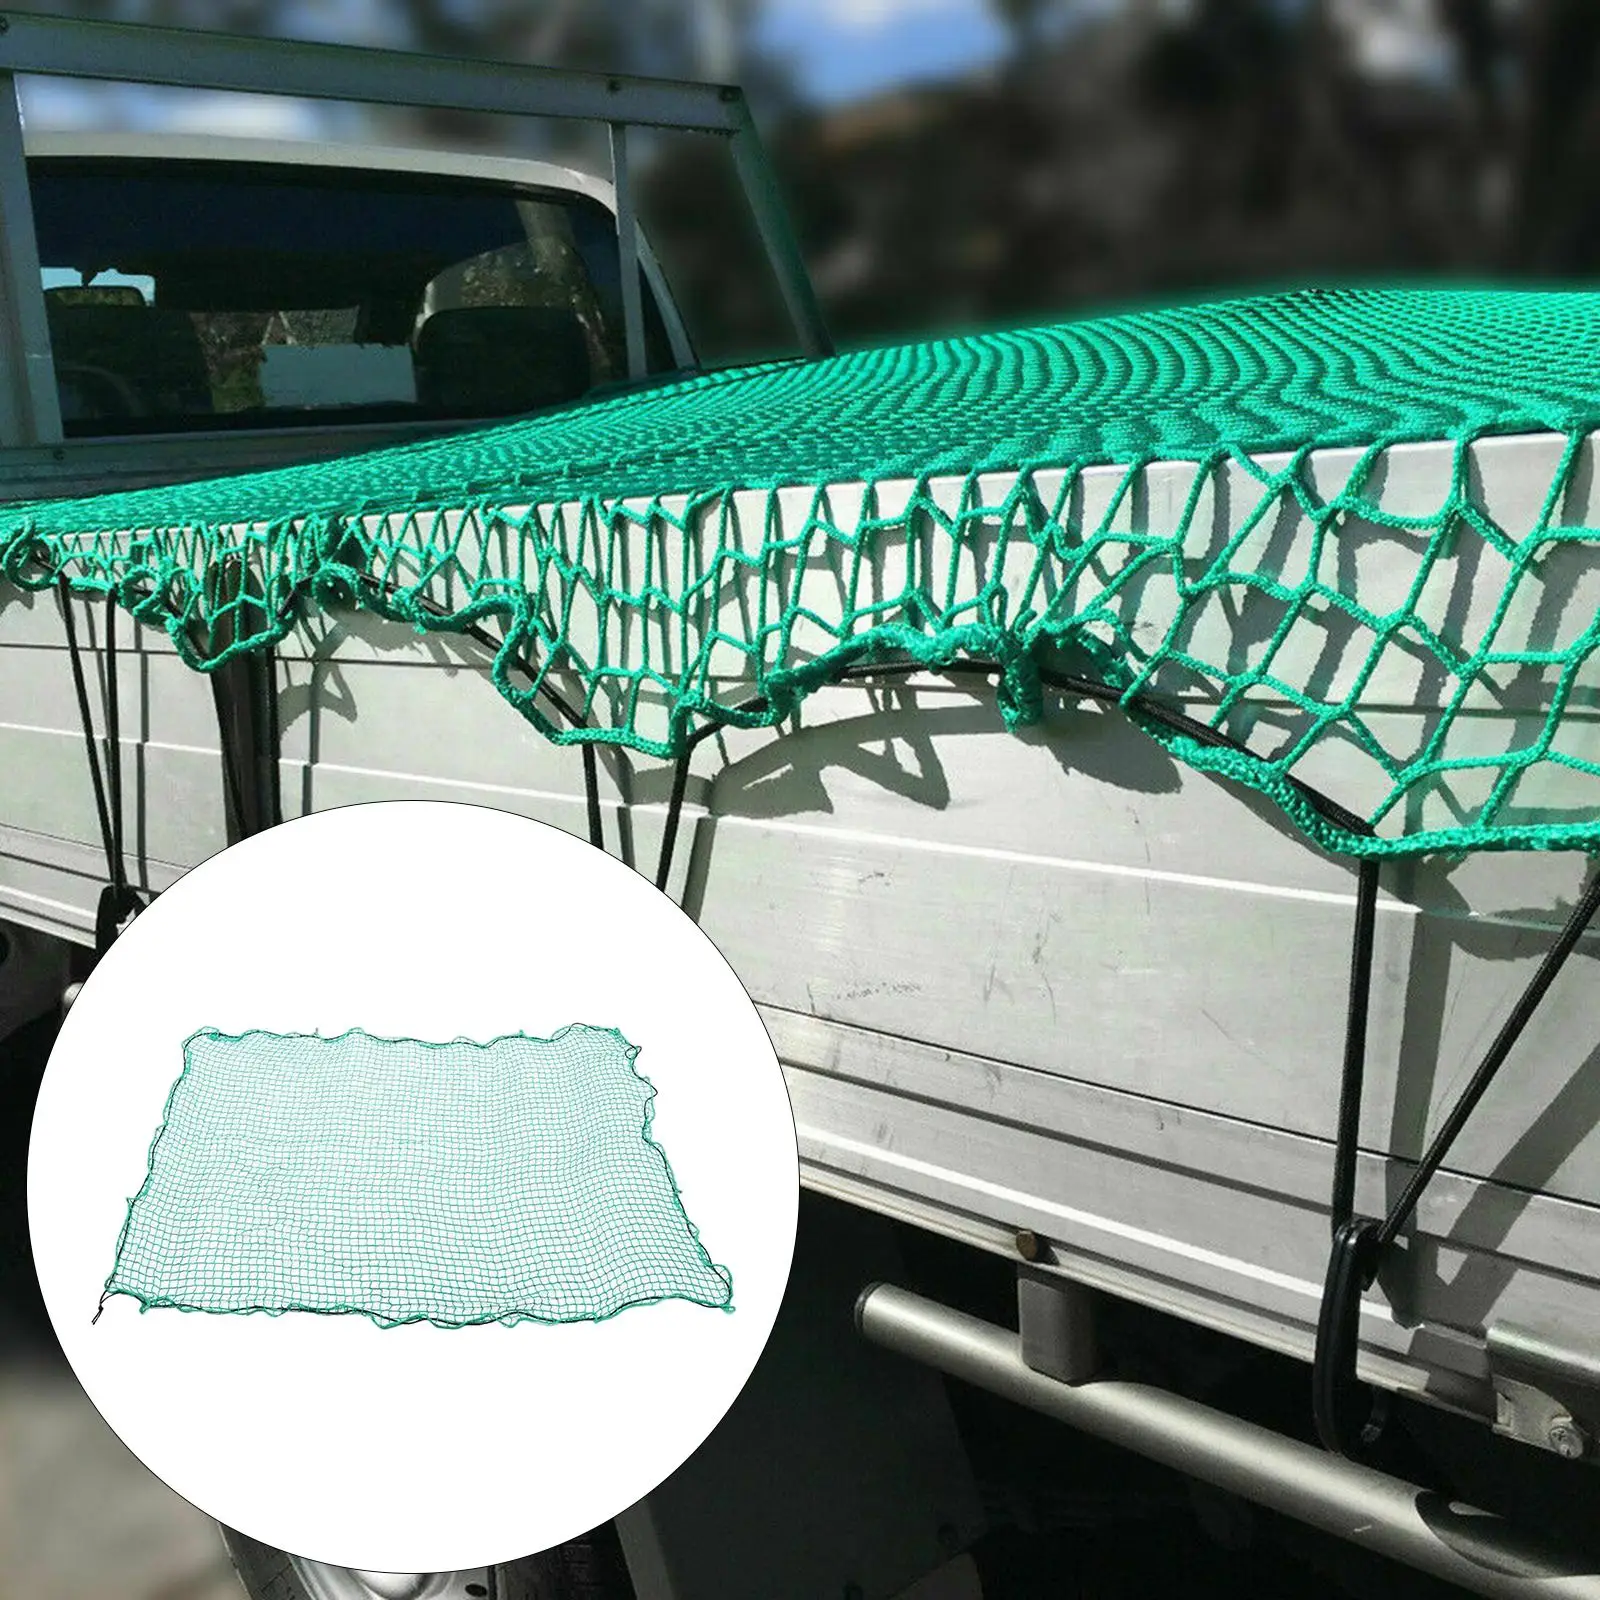 Heavy Duty Truck Bed Cargo Net 2M x 3M Mesh Net for Truck Bed SUV Car